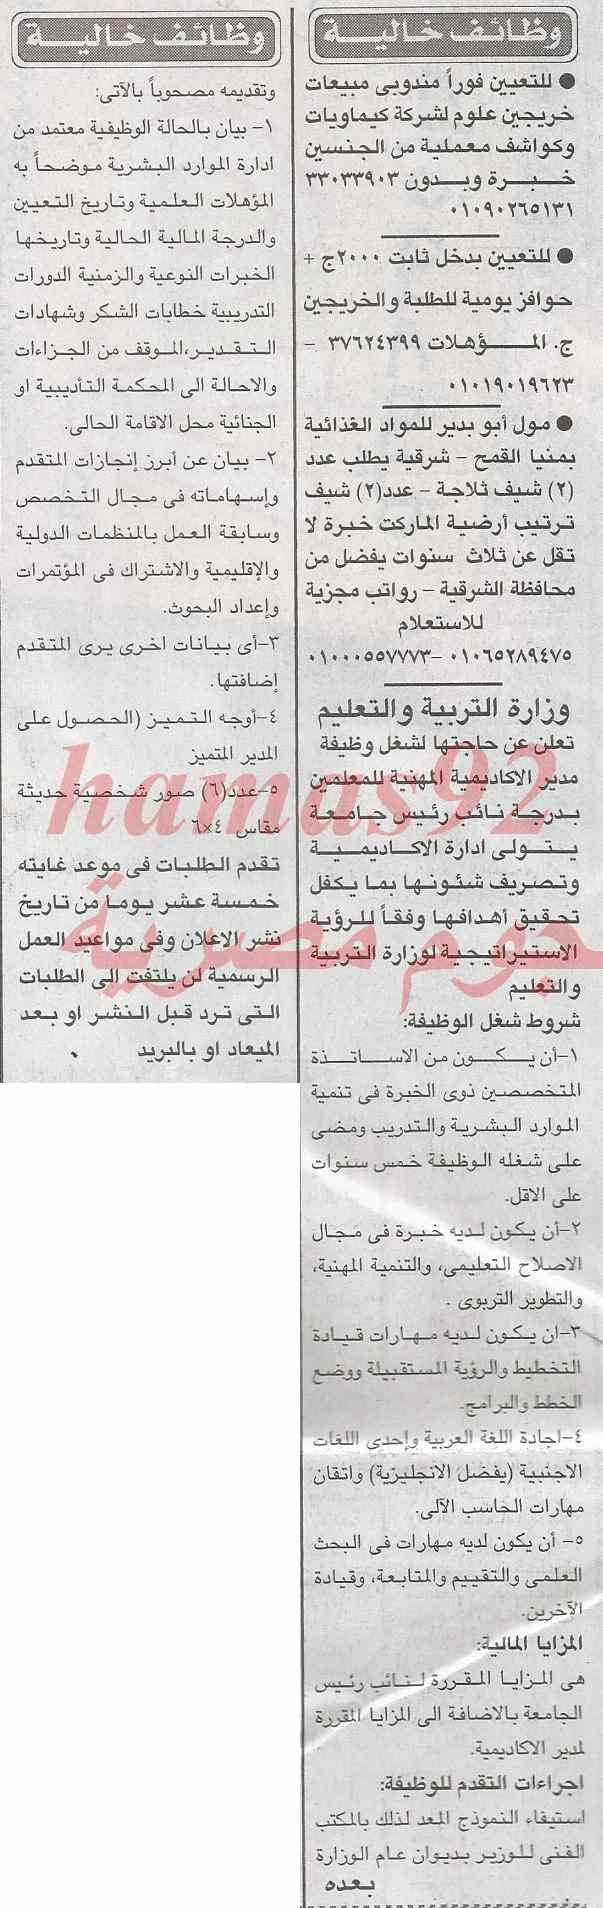 وظائف جريدة الاخبار اليوم الجمعة 7-2-2014 , وظائف خالية اليوم 7 فبراير2014